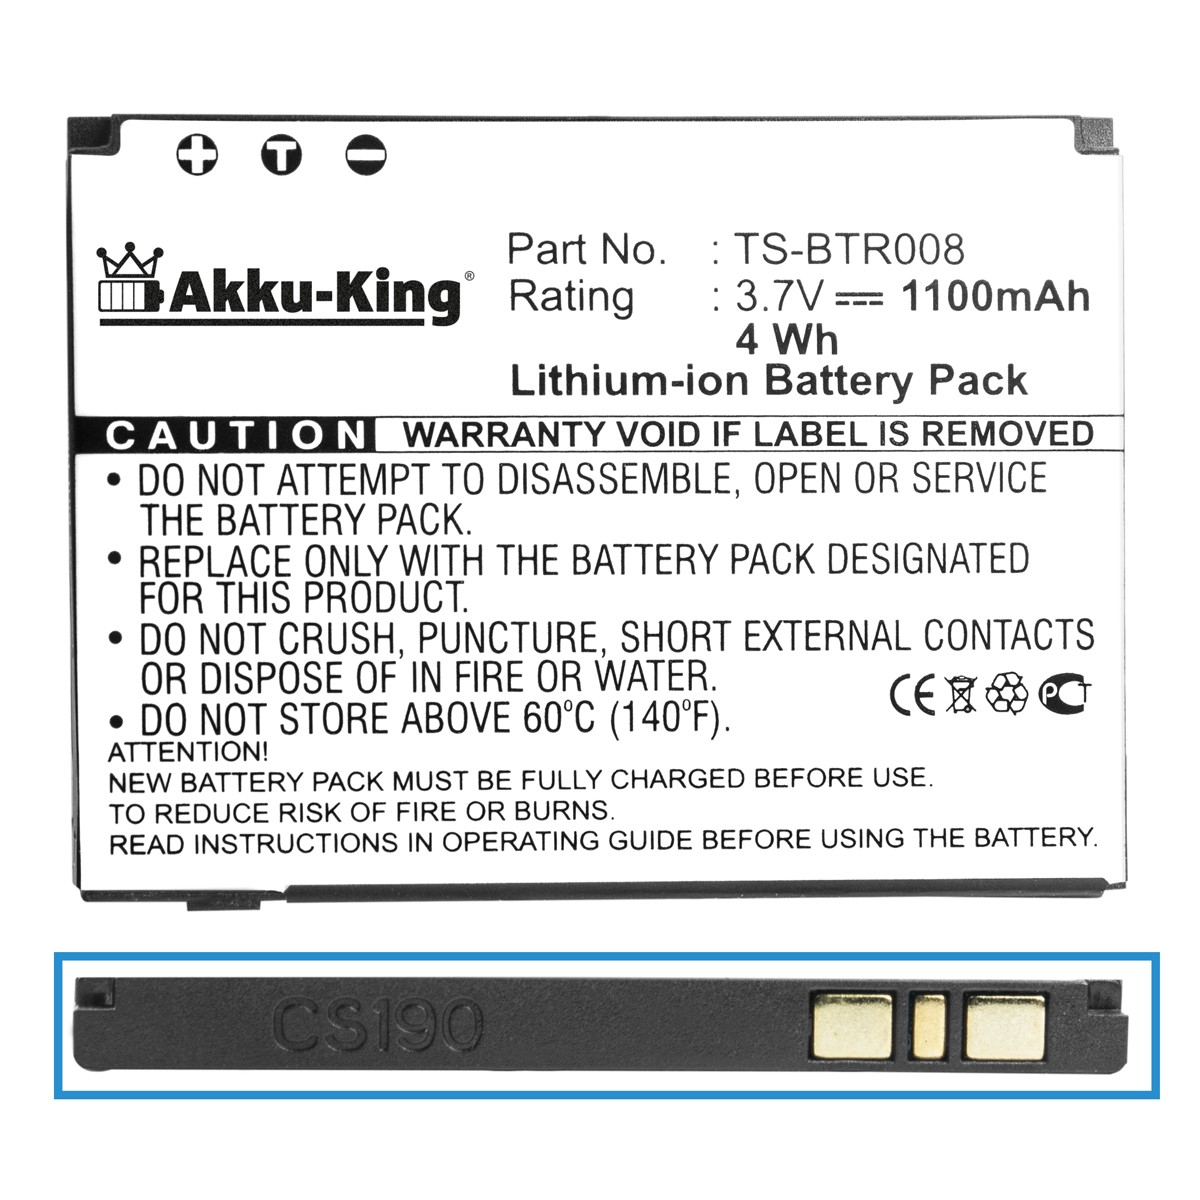 1100mAh AKKU-KING TS-BTR008 Volt, kompatibel Handy-Akku, Akku Li-Ion mit Toshiba 3.7